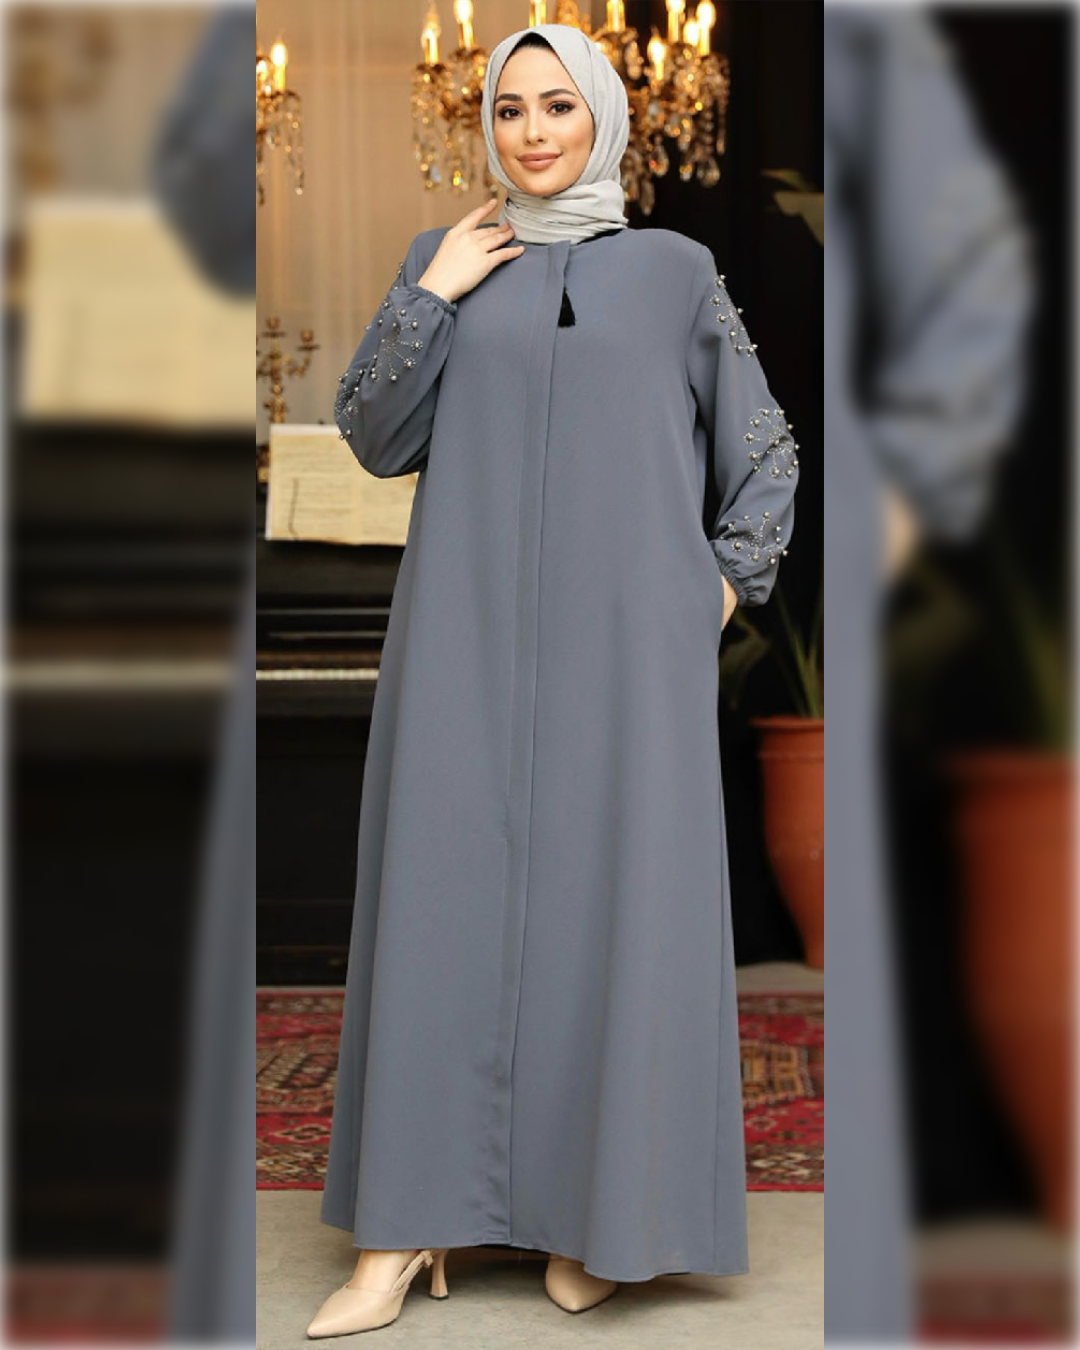 Fatimah Beaded Abaya Dress for Summer in Light Gray Shade   عباءة فاطمة الصيفية المزينة بالخرز  باللون الرمادي الفاتح الجميل